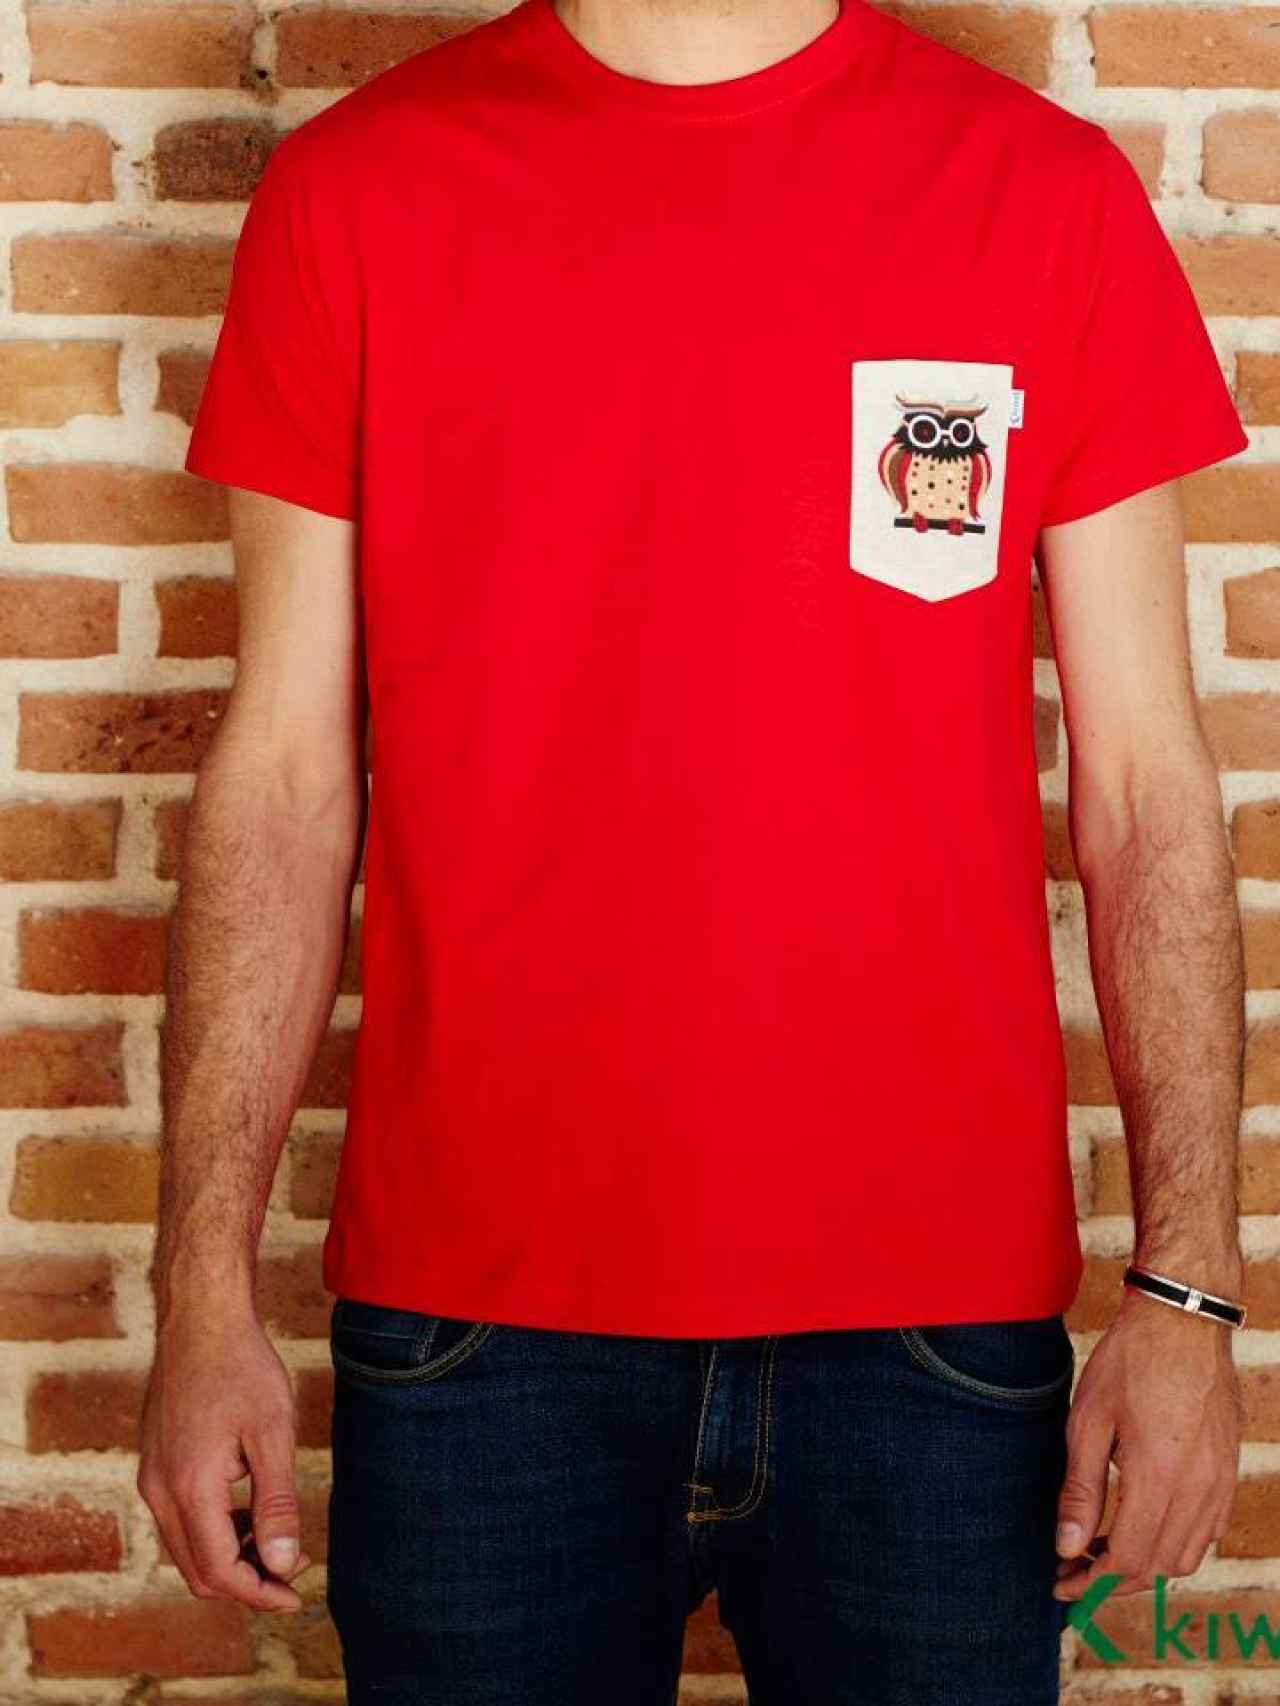 Camiseta de Kiwel Clothing, la marca de Jordi Mestre.